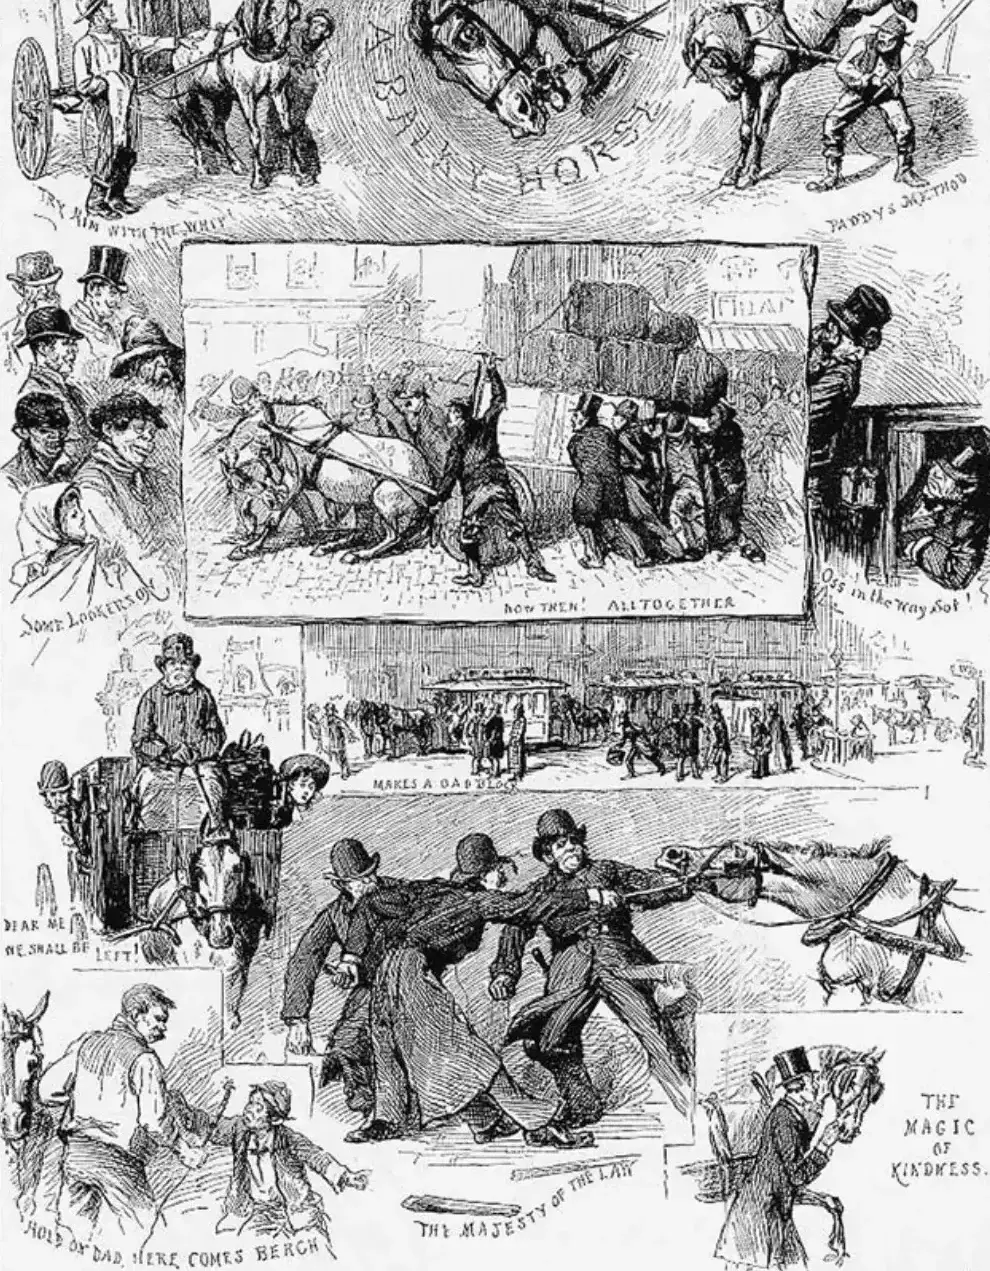 Viñeta bienestarista acerca del maltrato hacia los caballos (Thomas Worth, 1880) - ASPCA - Campñas animalistas del pasado y del presente - Campañas animalistas